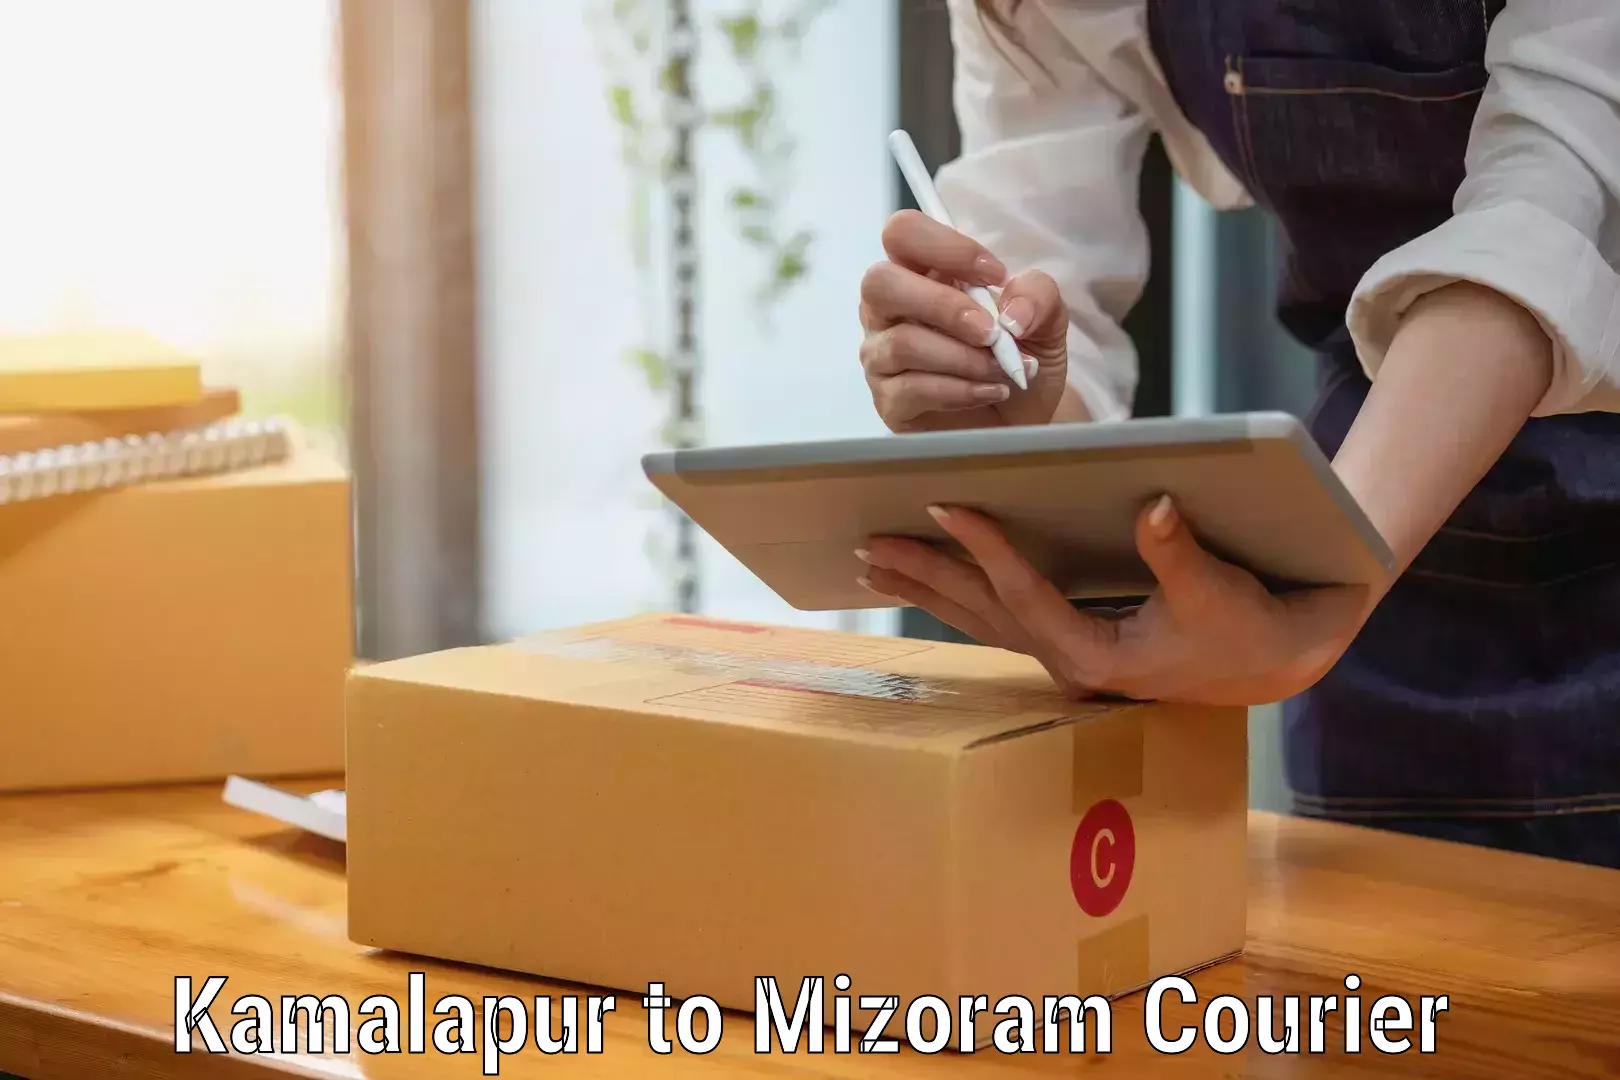 Moving and storage services Kamalapur to Mizoram